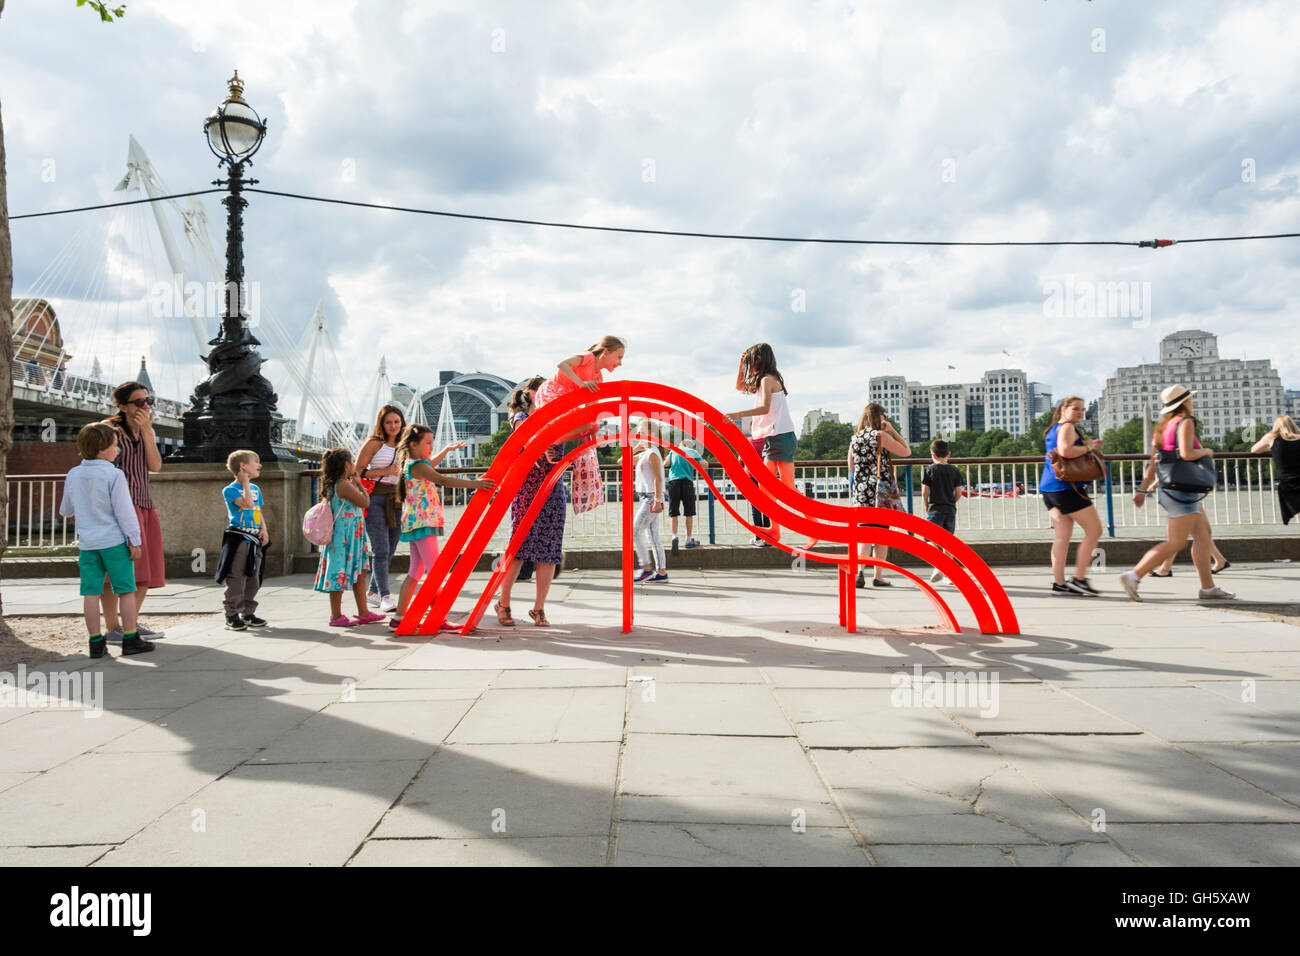 Bambini che giocano su uno dei da Jeppe Hein modificati di banchi sociale a Londra il South Bank, SE1, Regno Unito Foto Stock